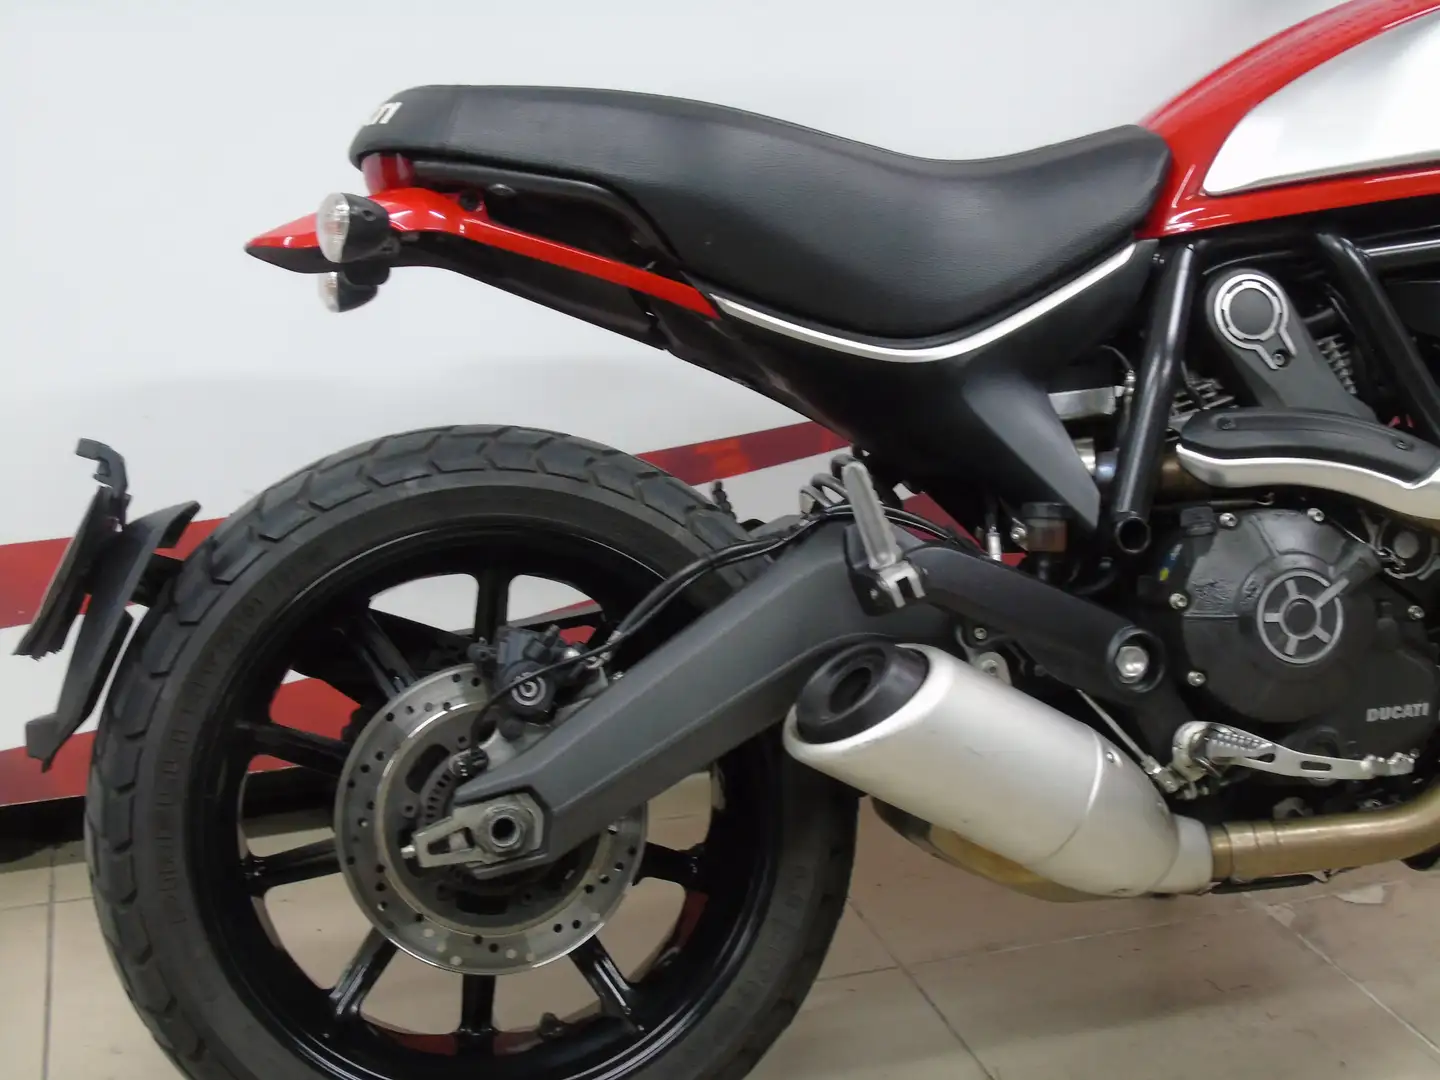 Ducati Scrambler Red - 2